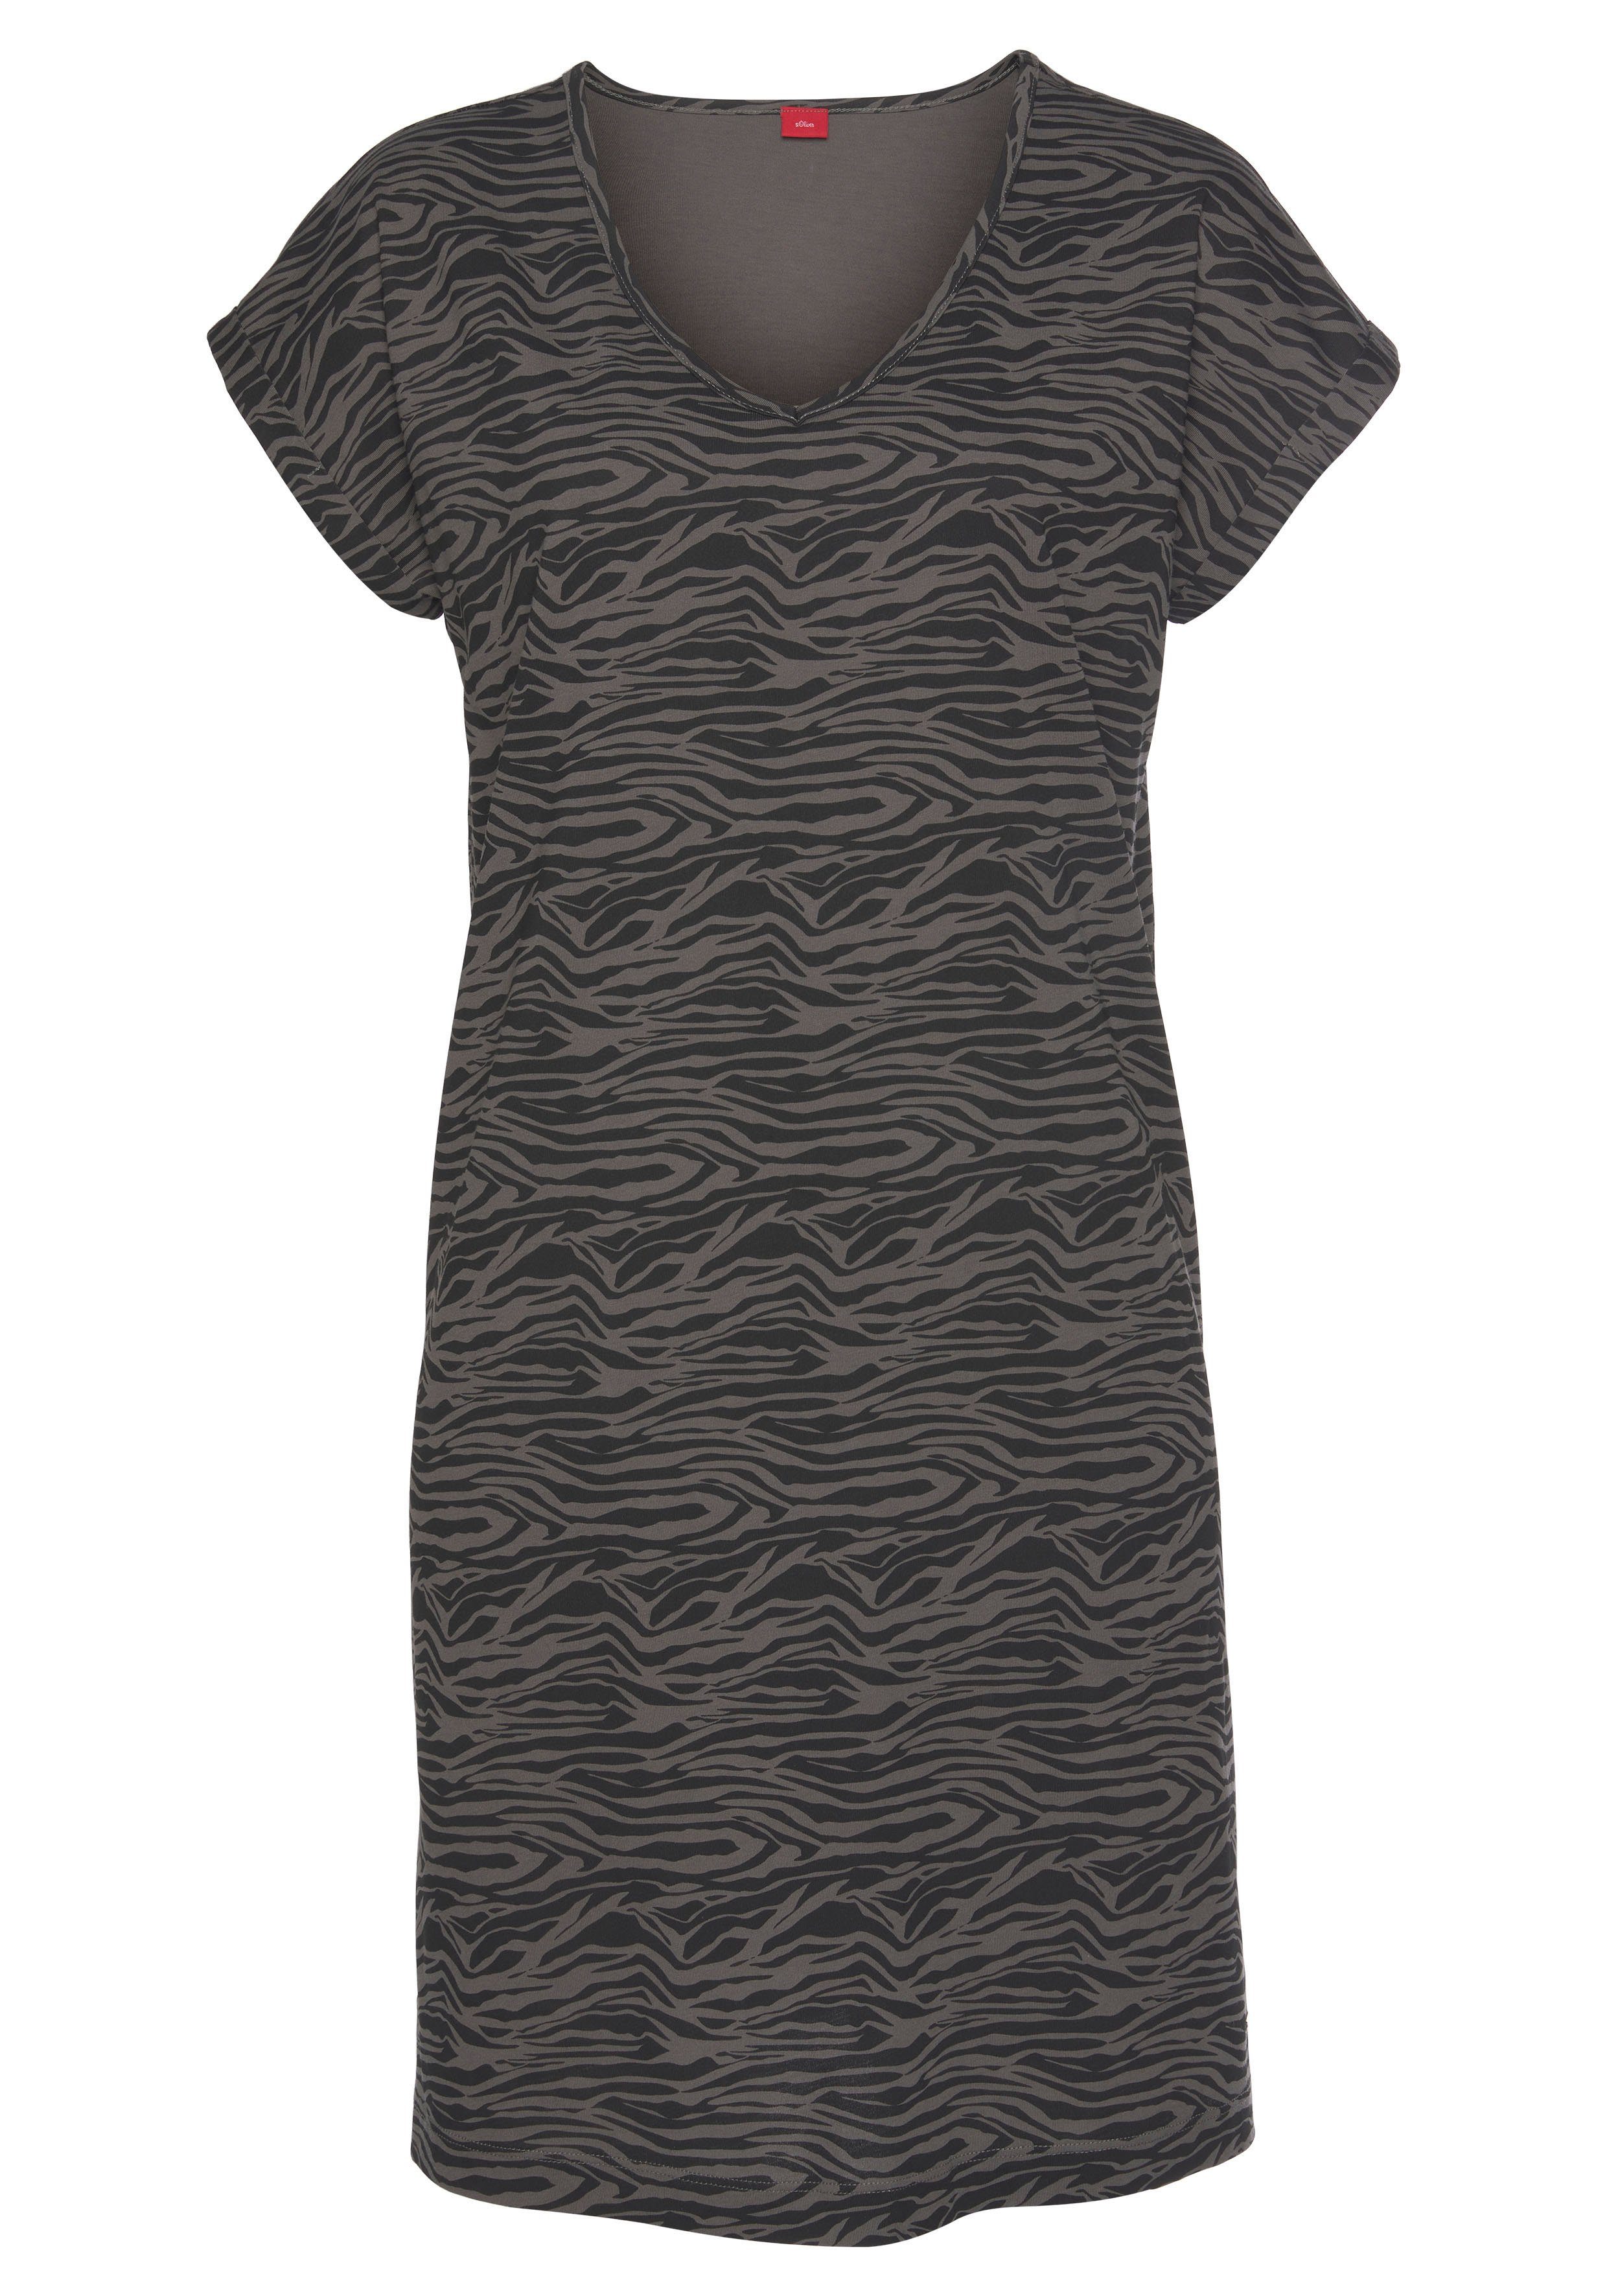 s.Oliver Sleepshirt mit Animal-Print schwarz-dunkelgrau-gemustert